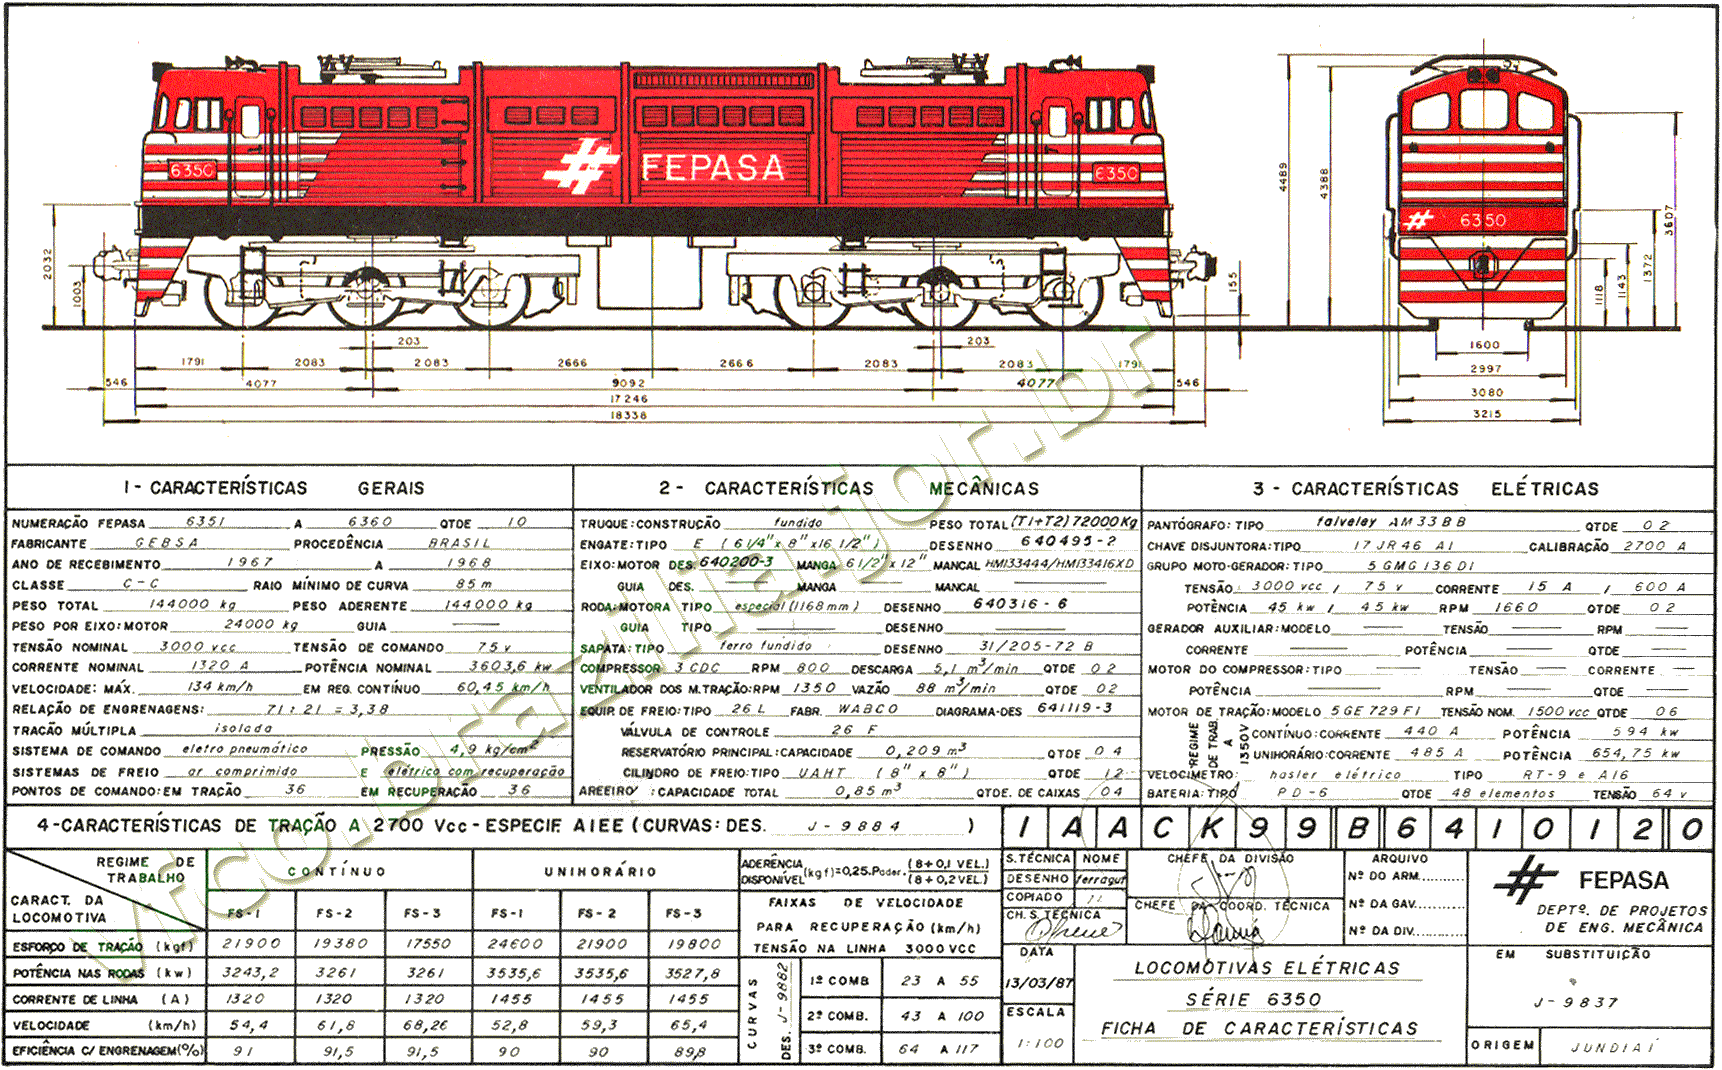 Desenho, medidas e características das locomotivas "Vanderleia" GE do Brasil C-C nº 6351 a 6360 da Fepasa - Ferrovias Paulistas